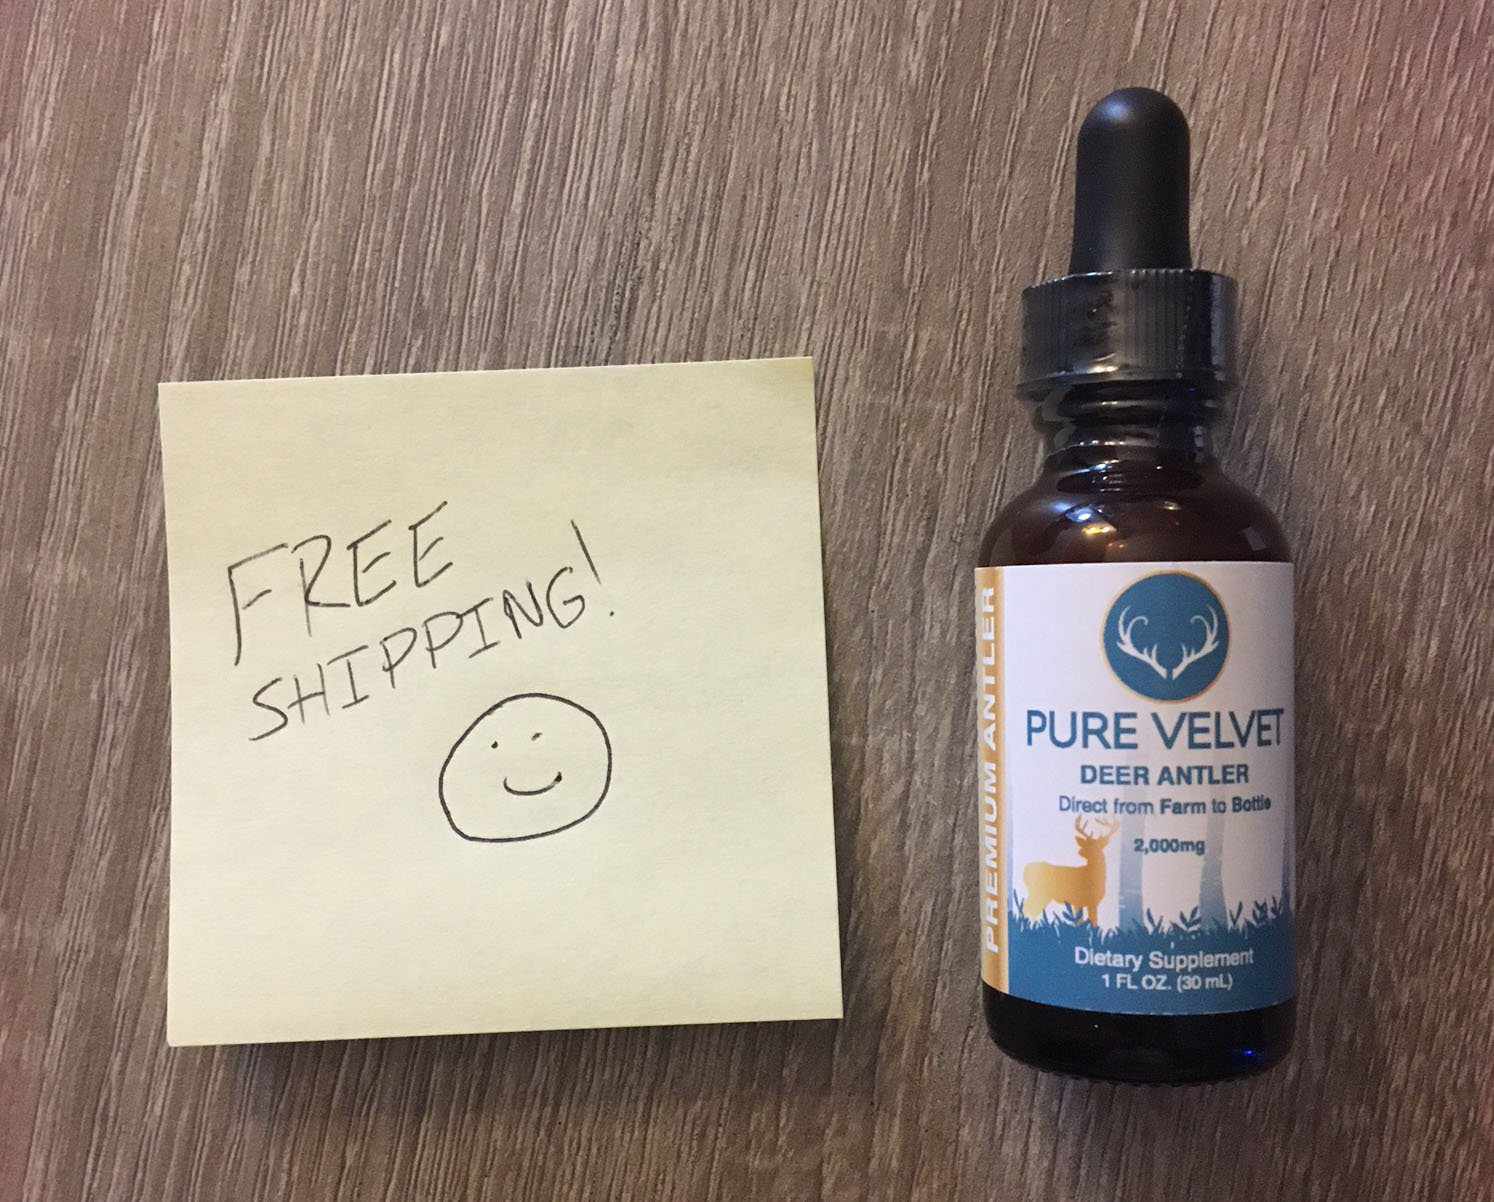 Get Pure Velvet's Deer Antler Velvet Supplements with free shipping